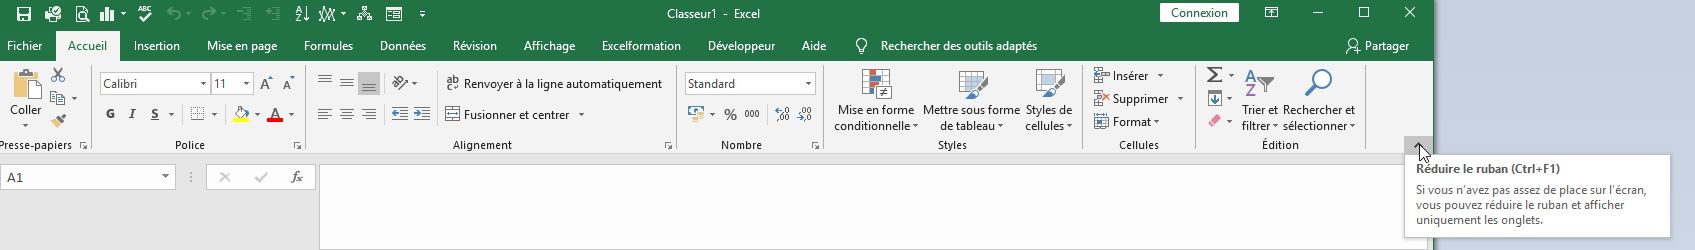 Excel formation - Apprendre à utiliser Excel pour débutant - Le ruban - 04